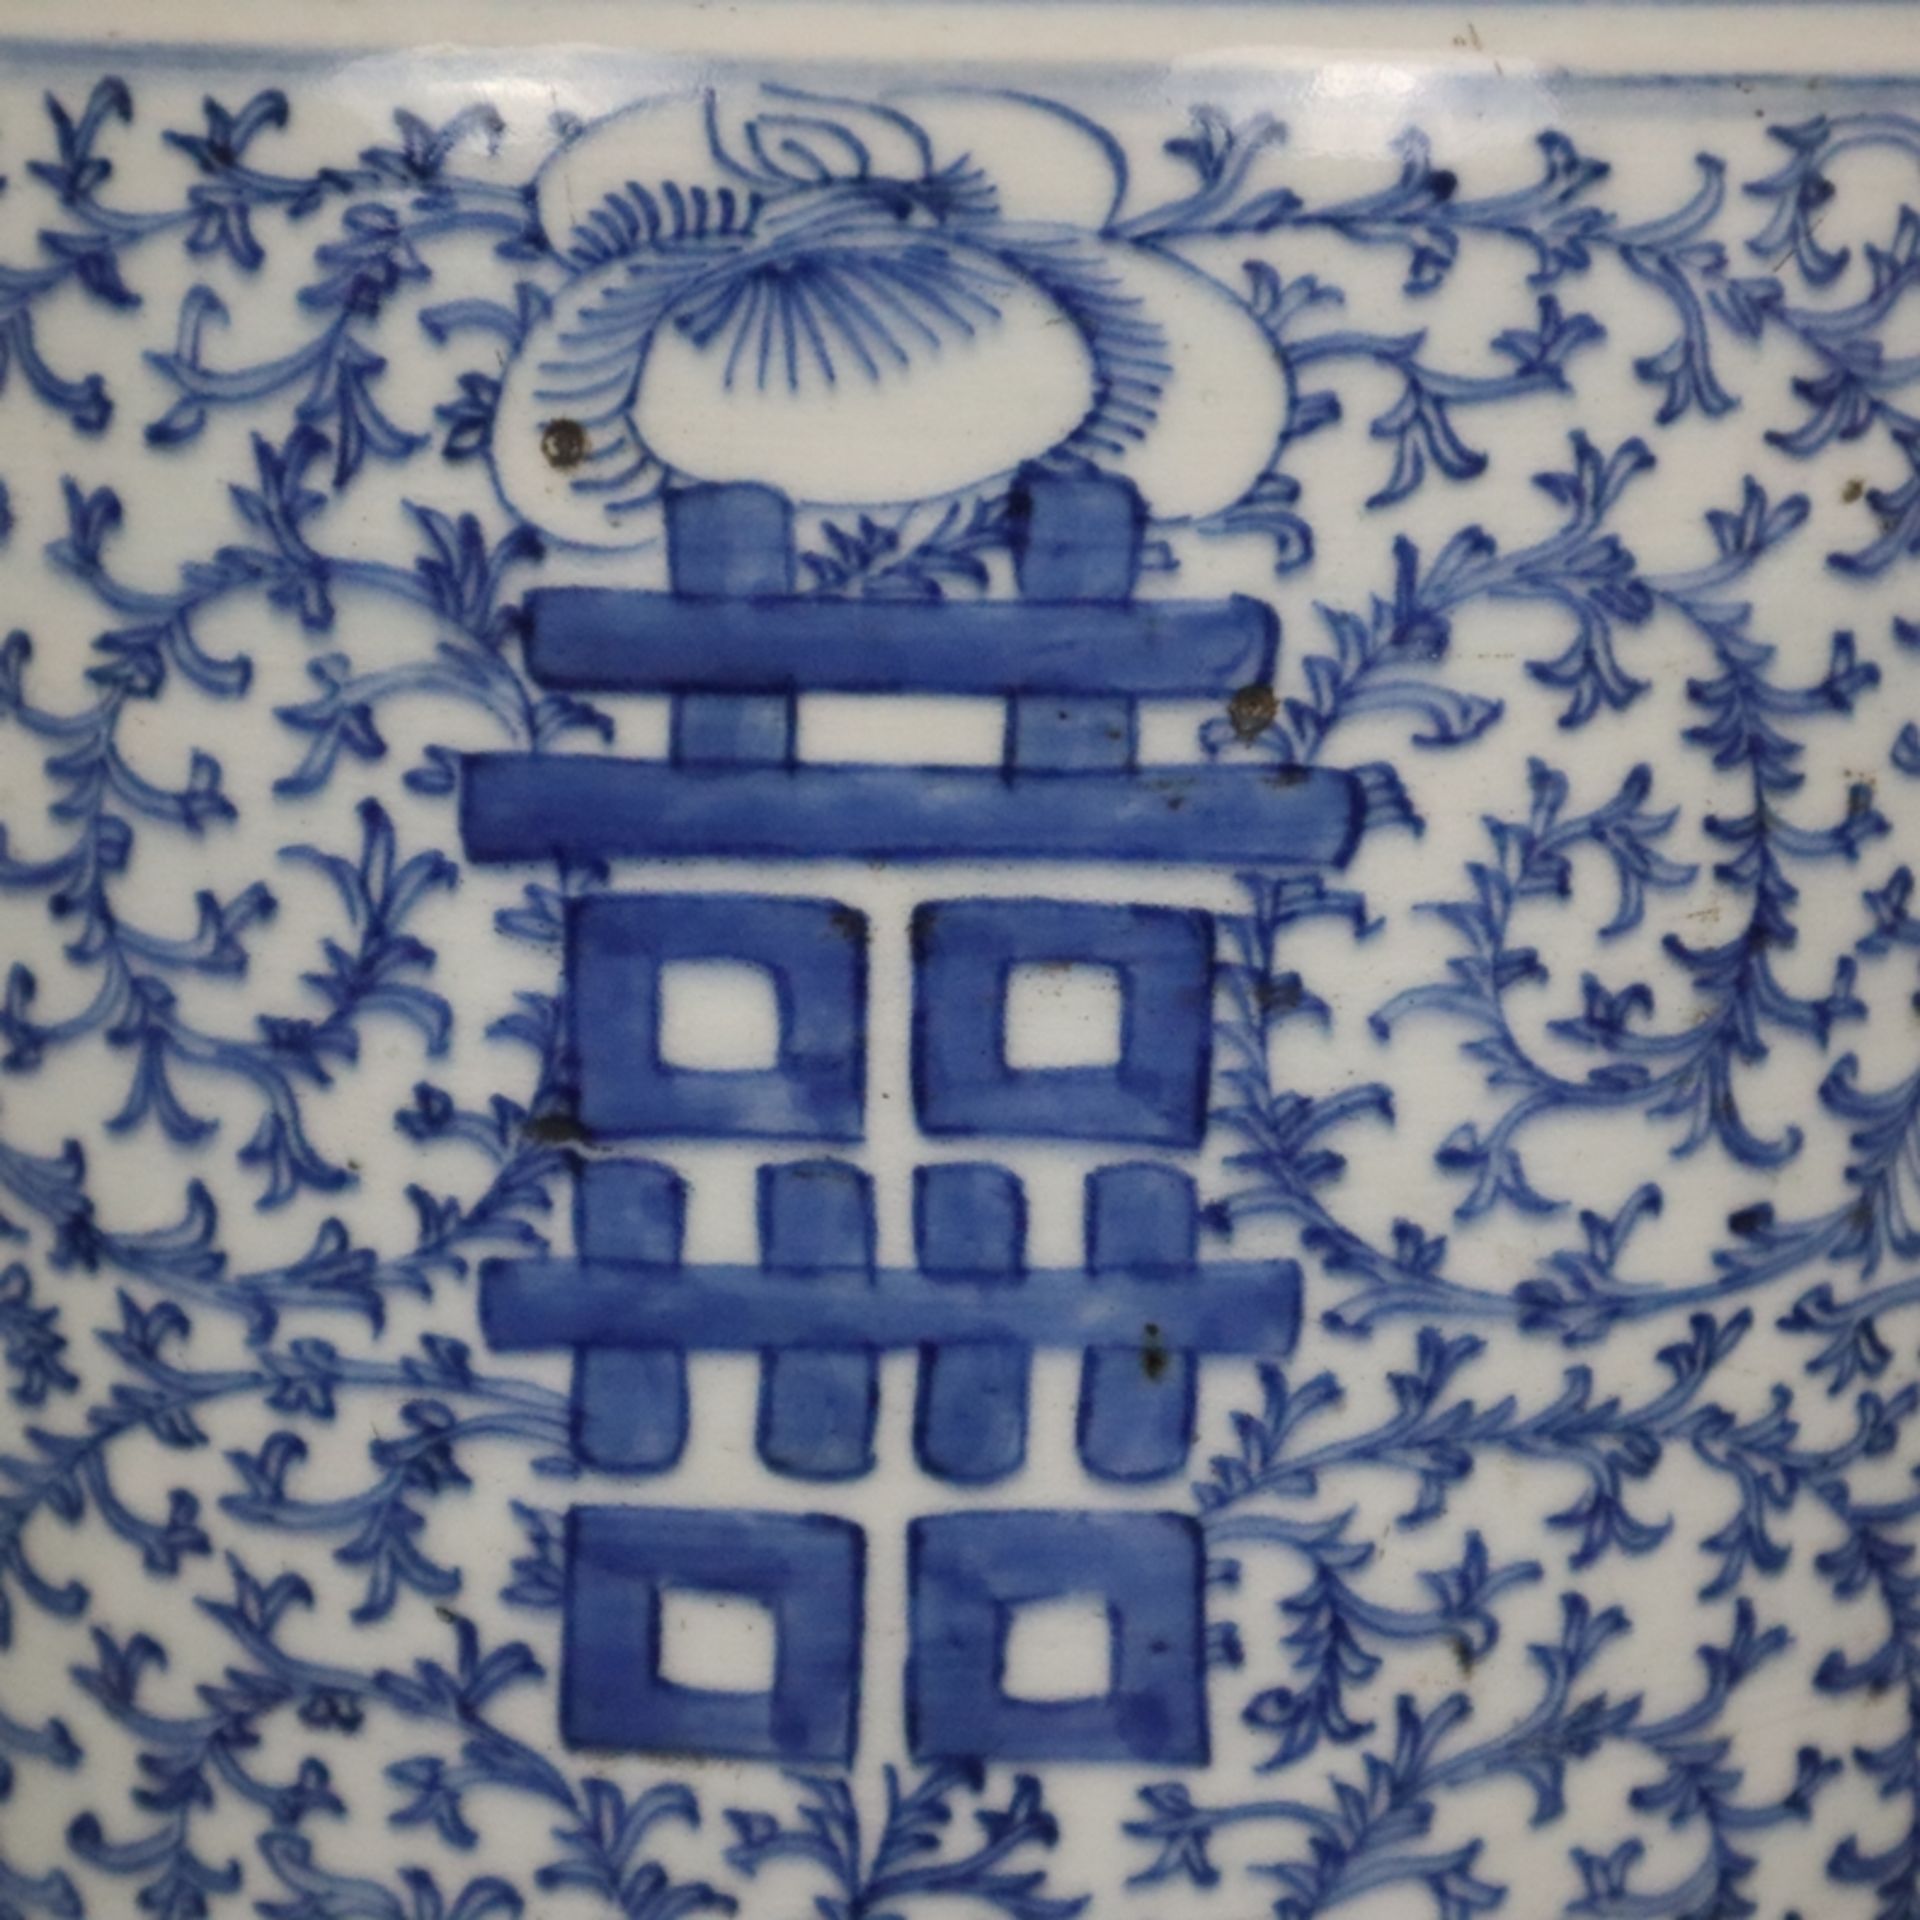 Blau-weiße Bodenvase - China, späte Qing-Dynastie, Tongzhi 1862-1875, sog. „Hochzeitsvase“, auf der - Bild 10 aus 14